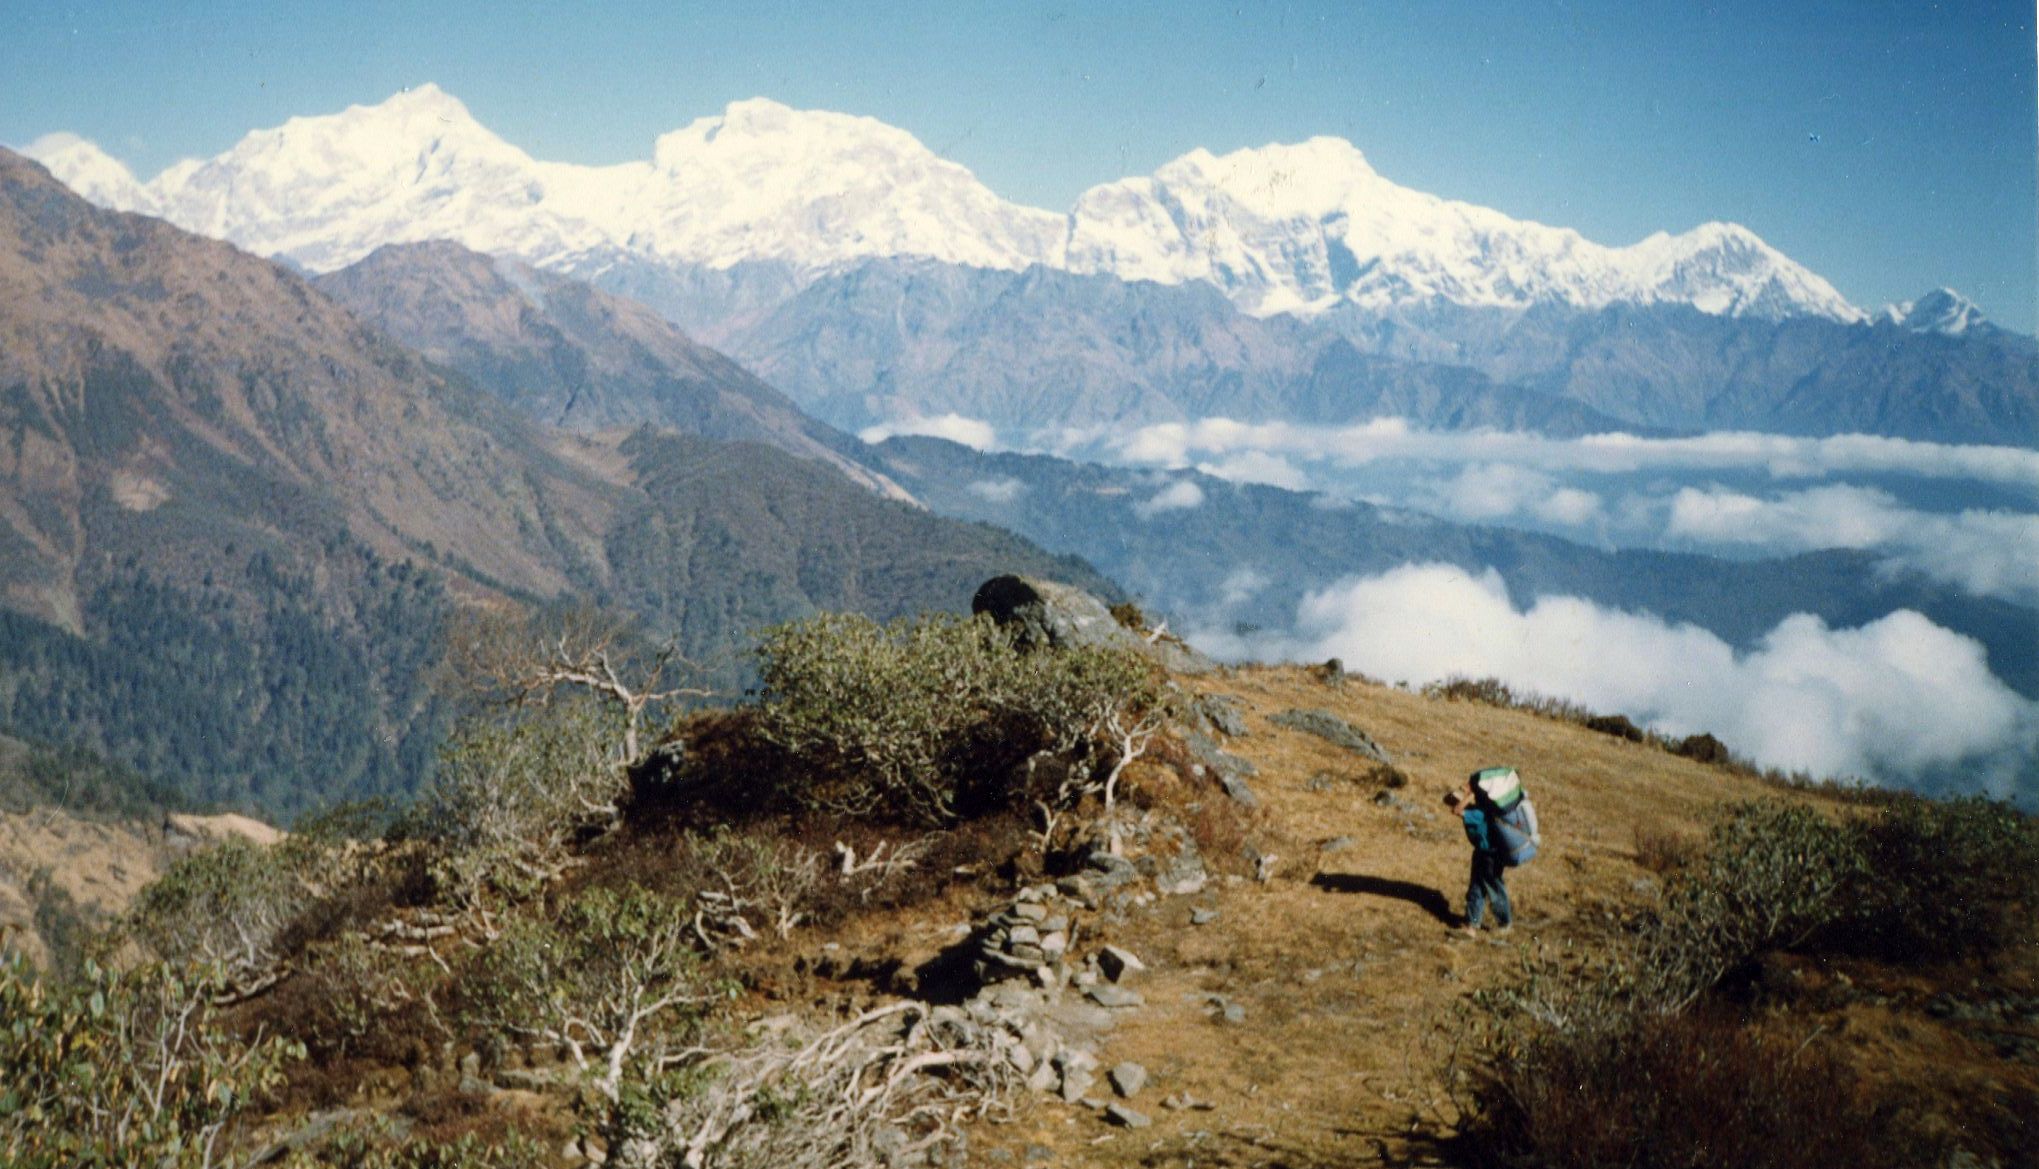 The Manaslu Himal from Talbrung Danda